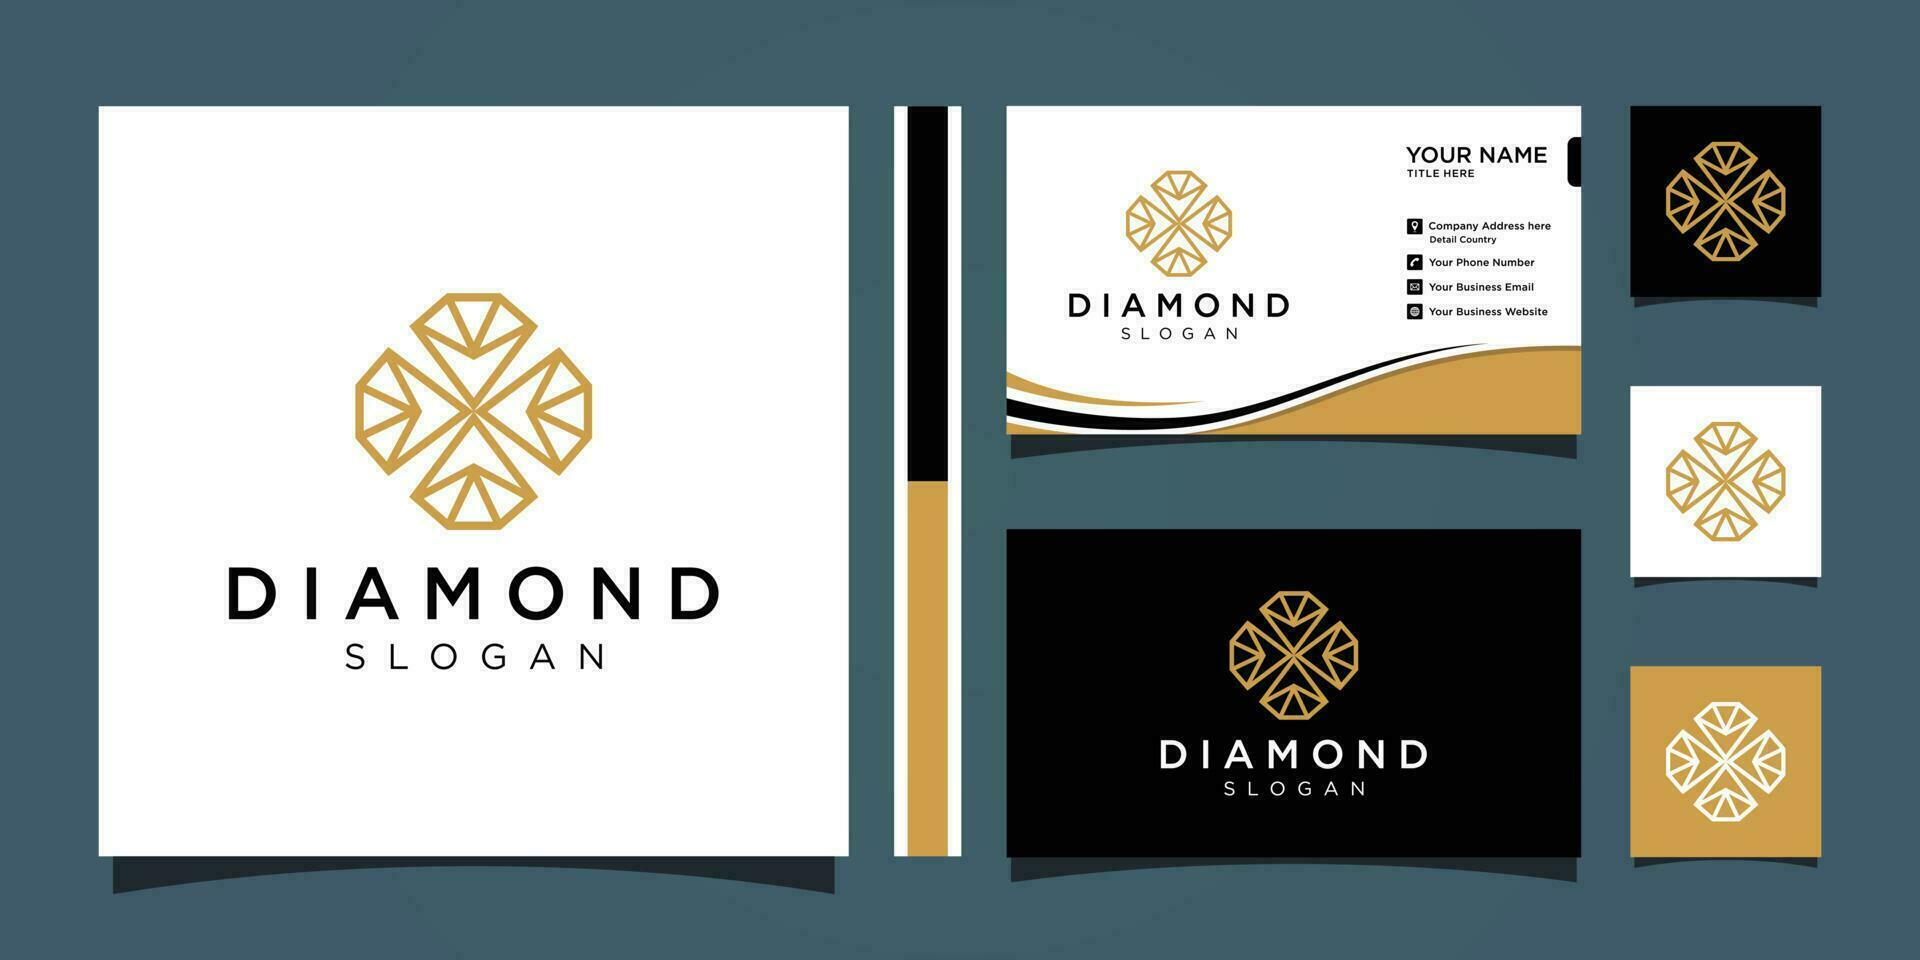 Créatif diamant concept logo conception modèle avec affaires carte conception prime vecteur